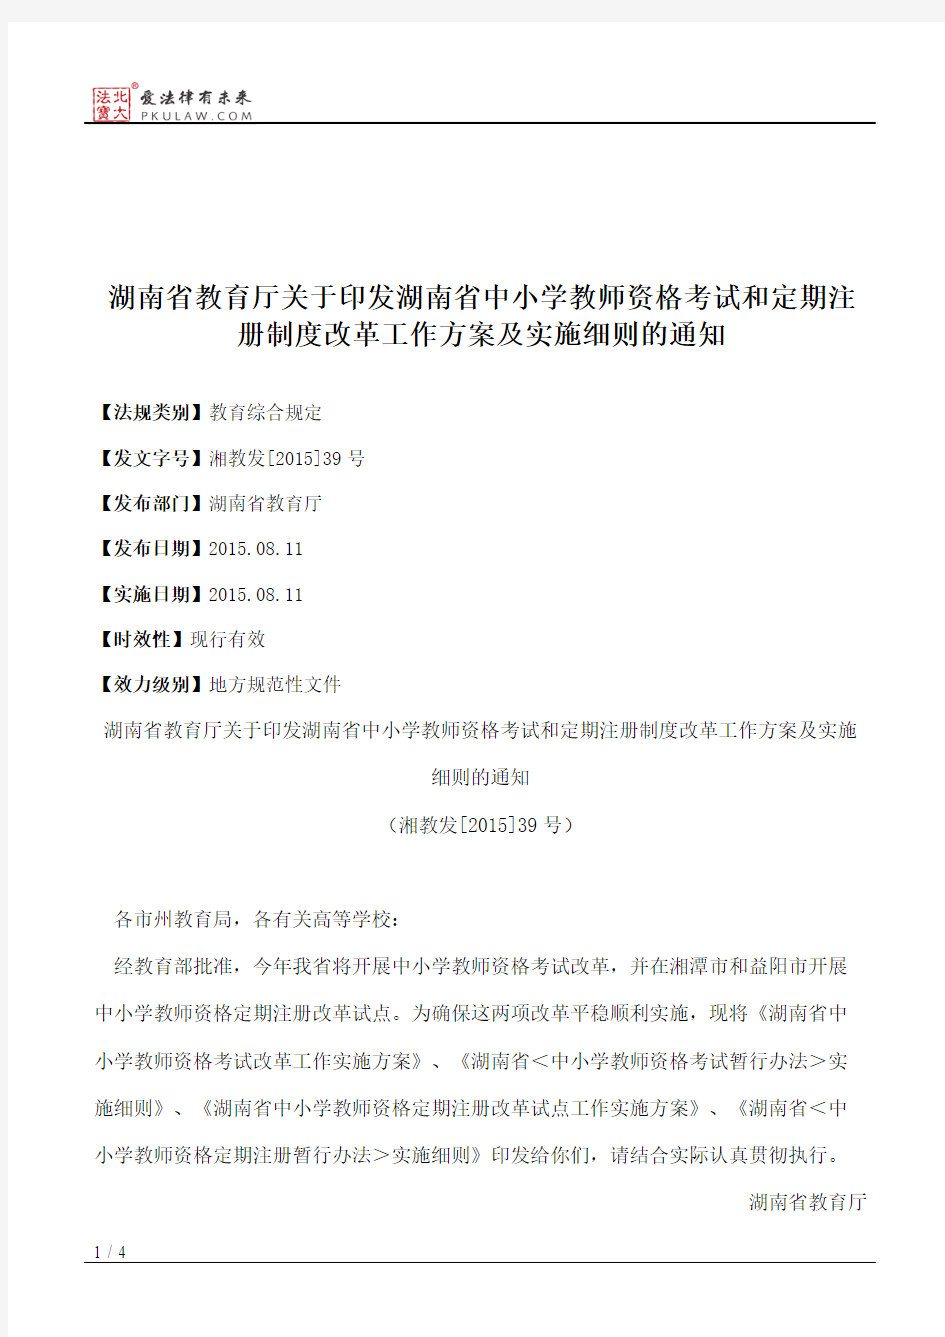 湖南省教育厅关于印发湖南省中小学教师资格考试和定期注册制度改